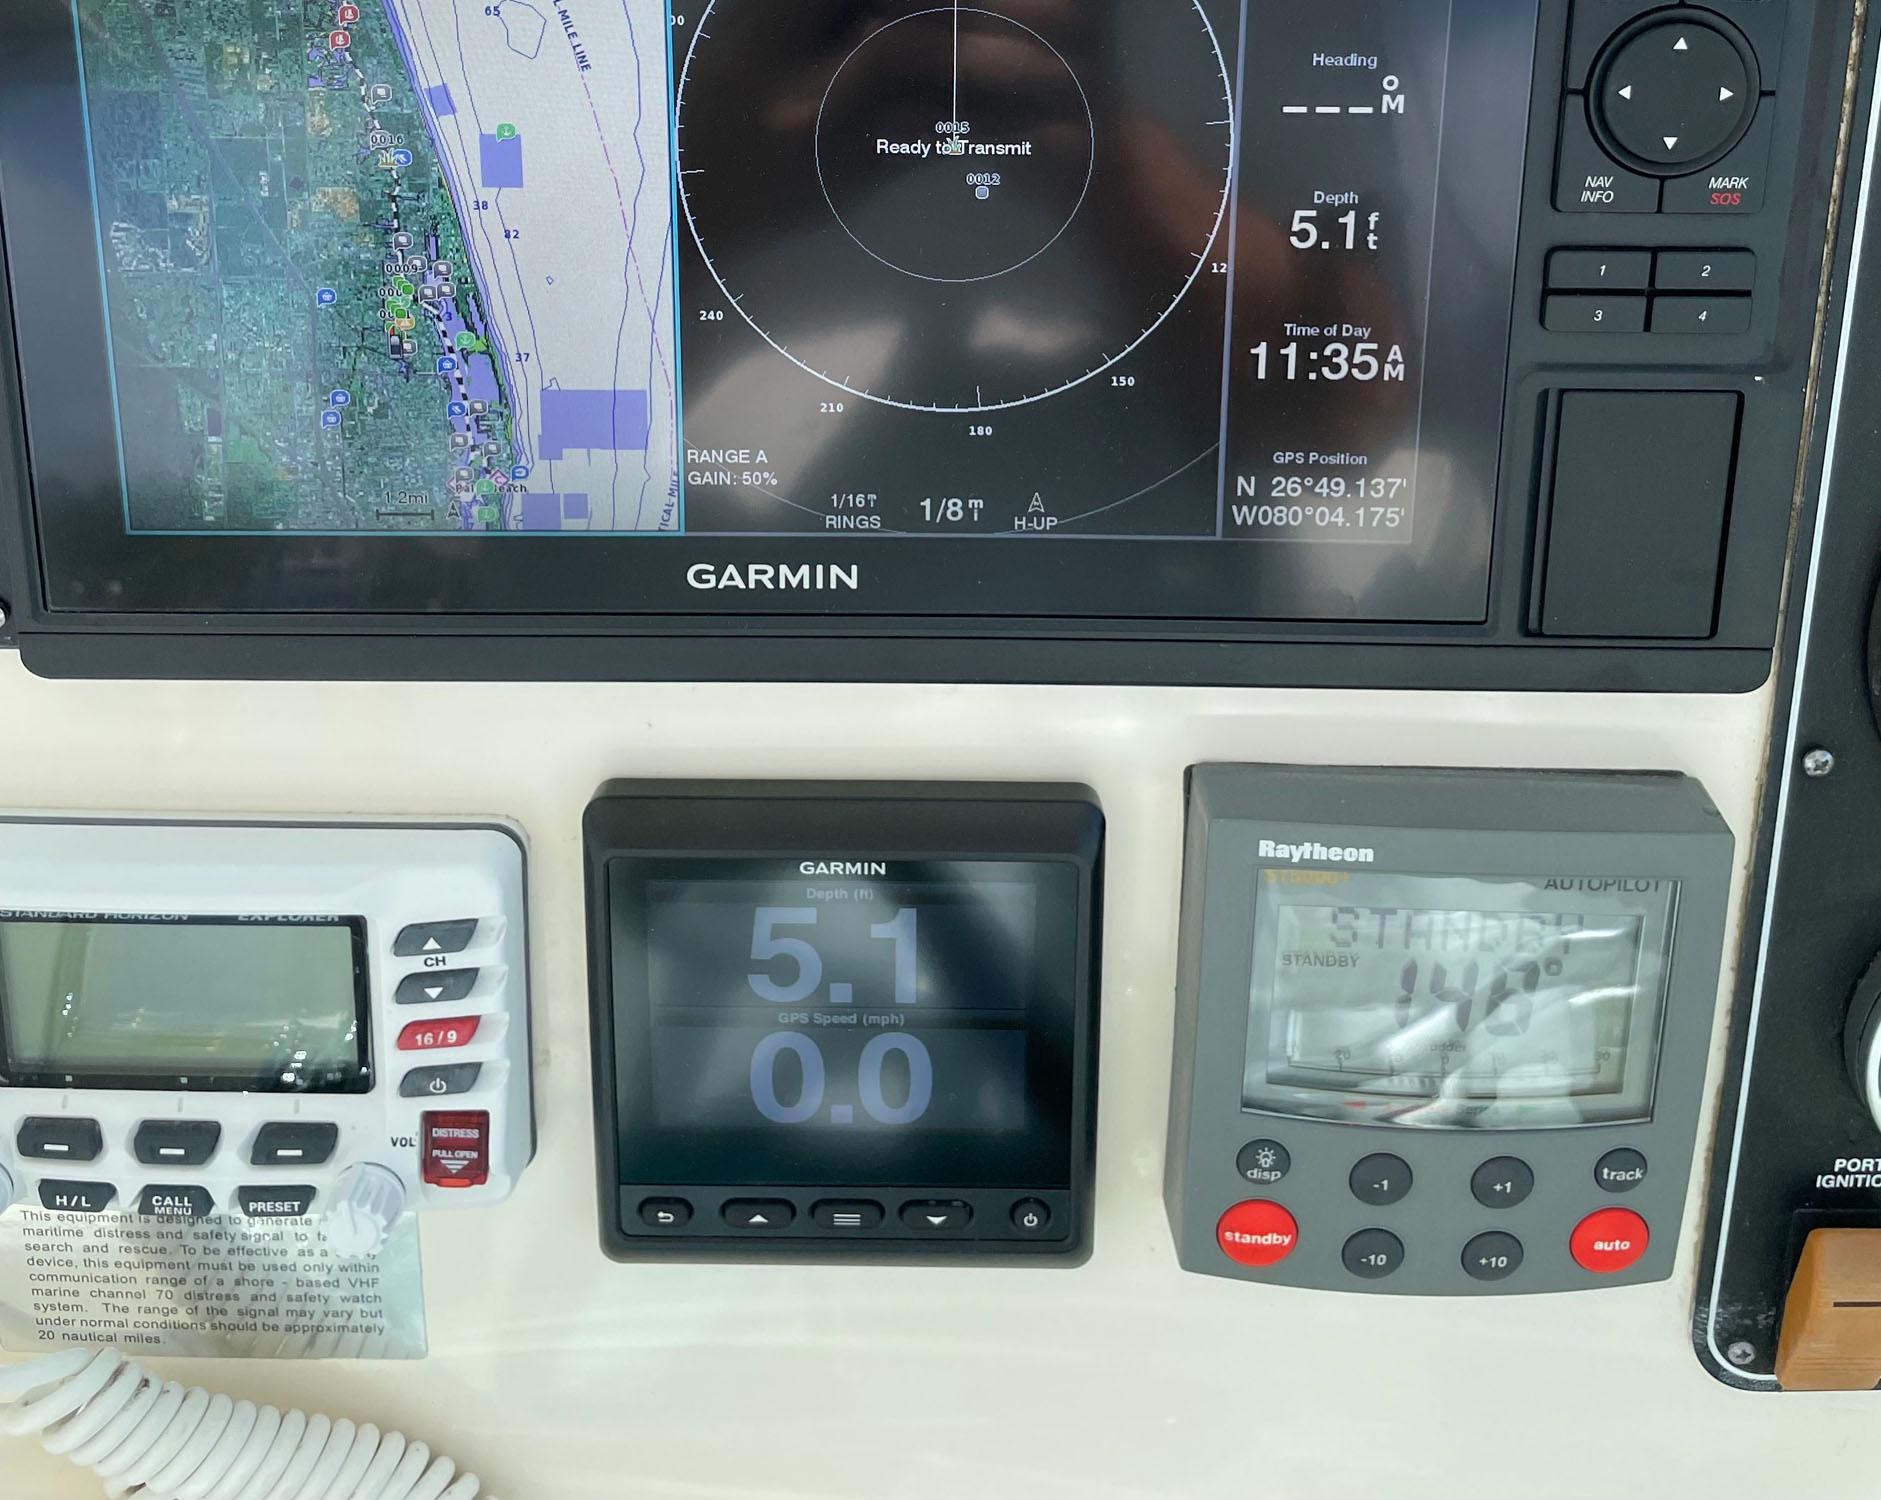 VHF, Garmin, Raytheon Autopilot